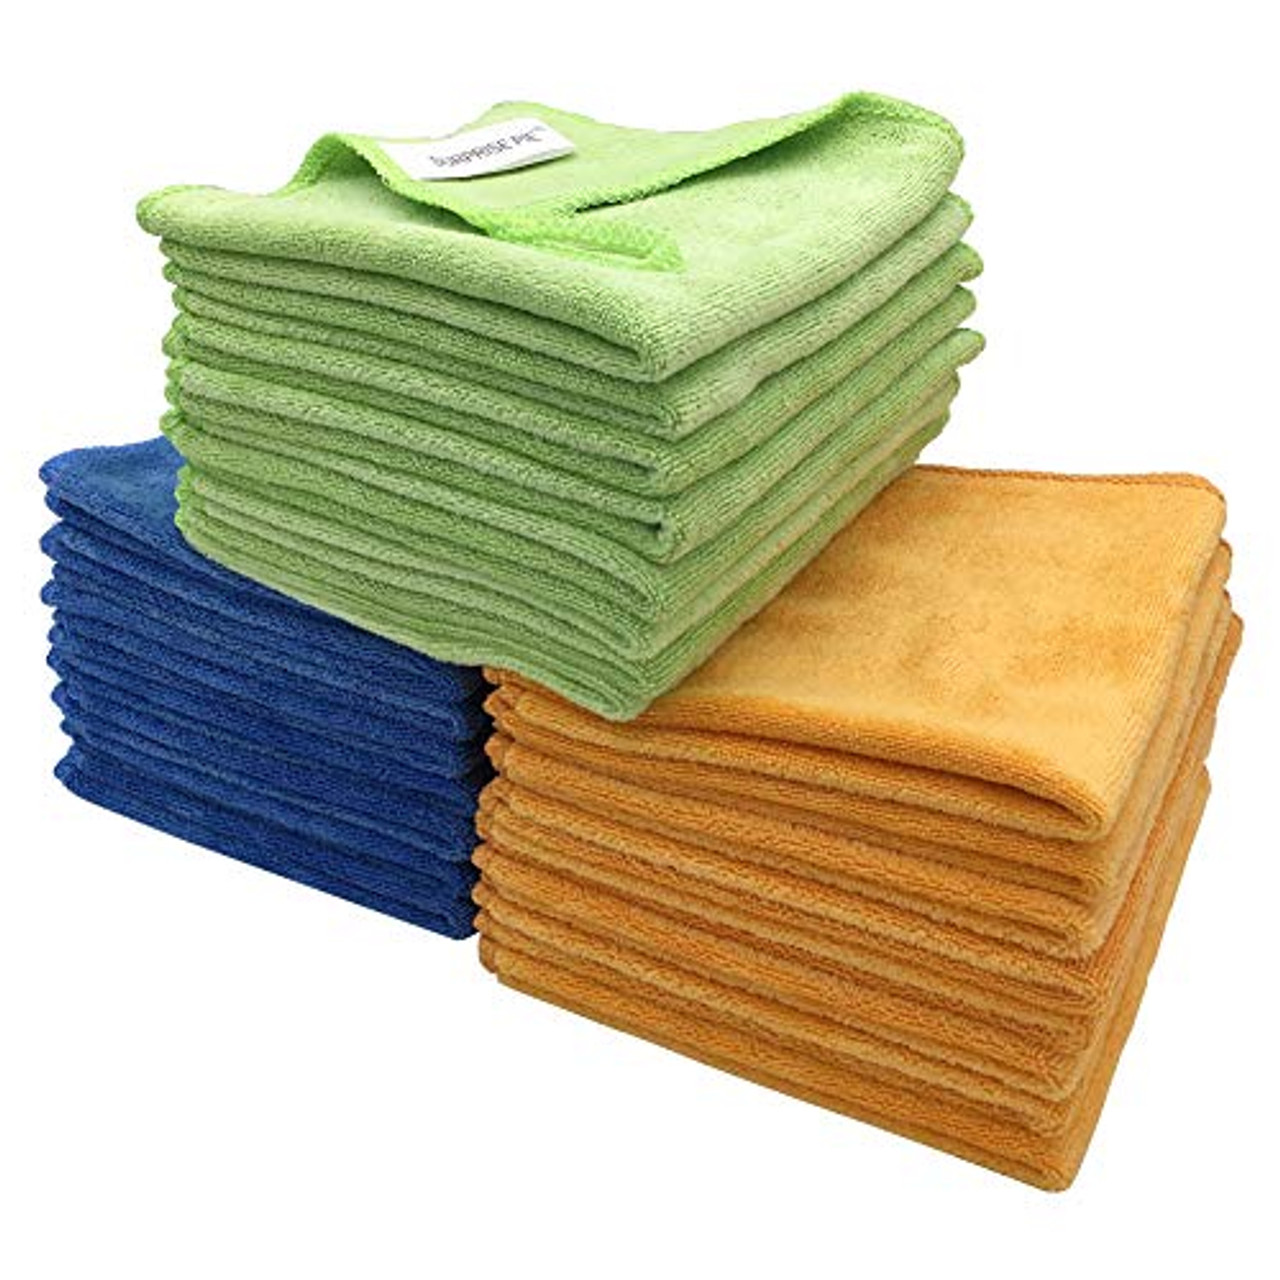 Spontex Microfibre Cloths, 24 Pack: Premium Cleaning Essentials